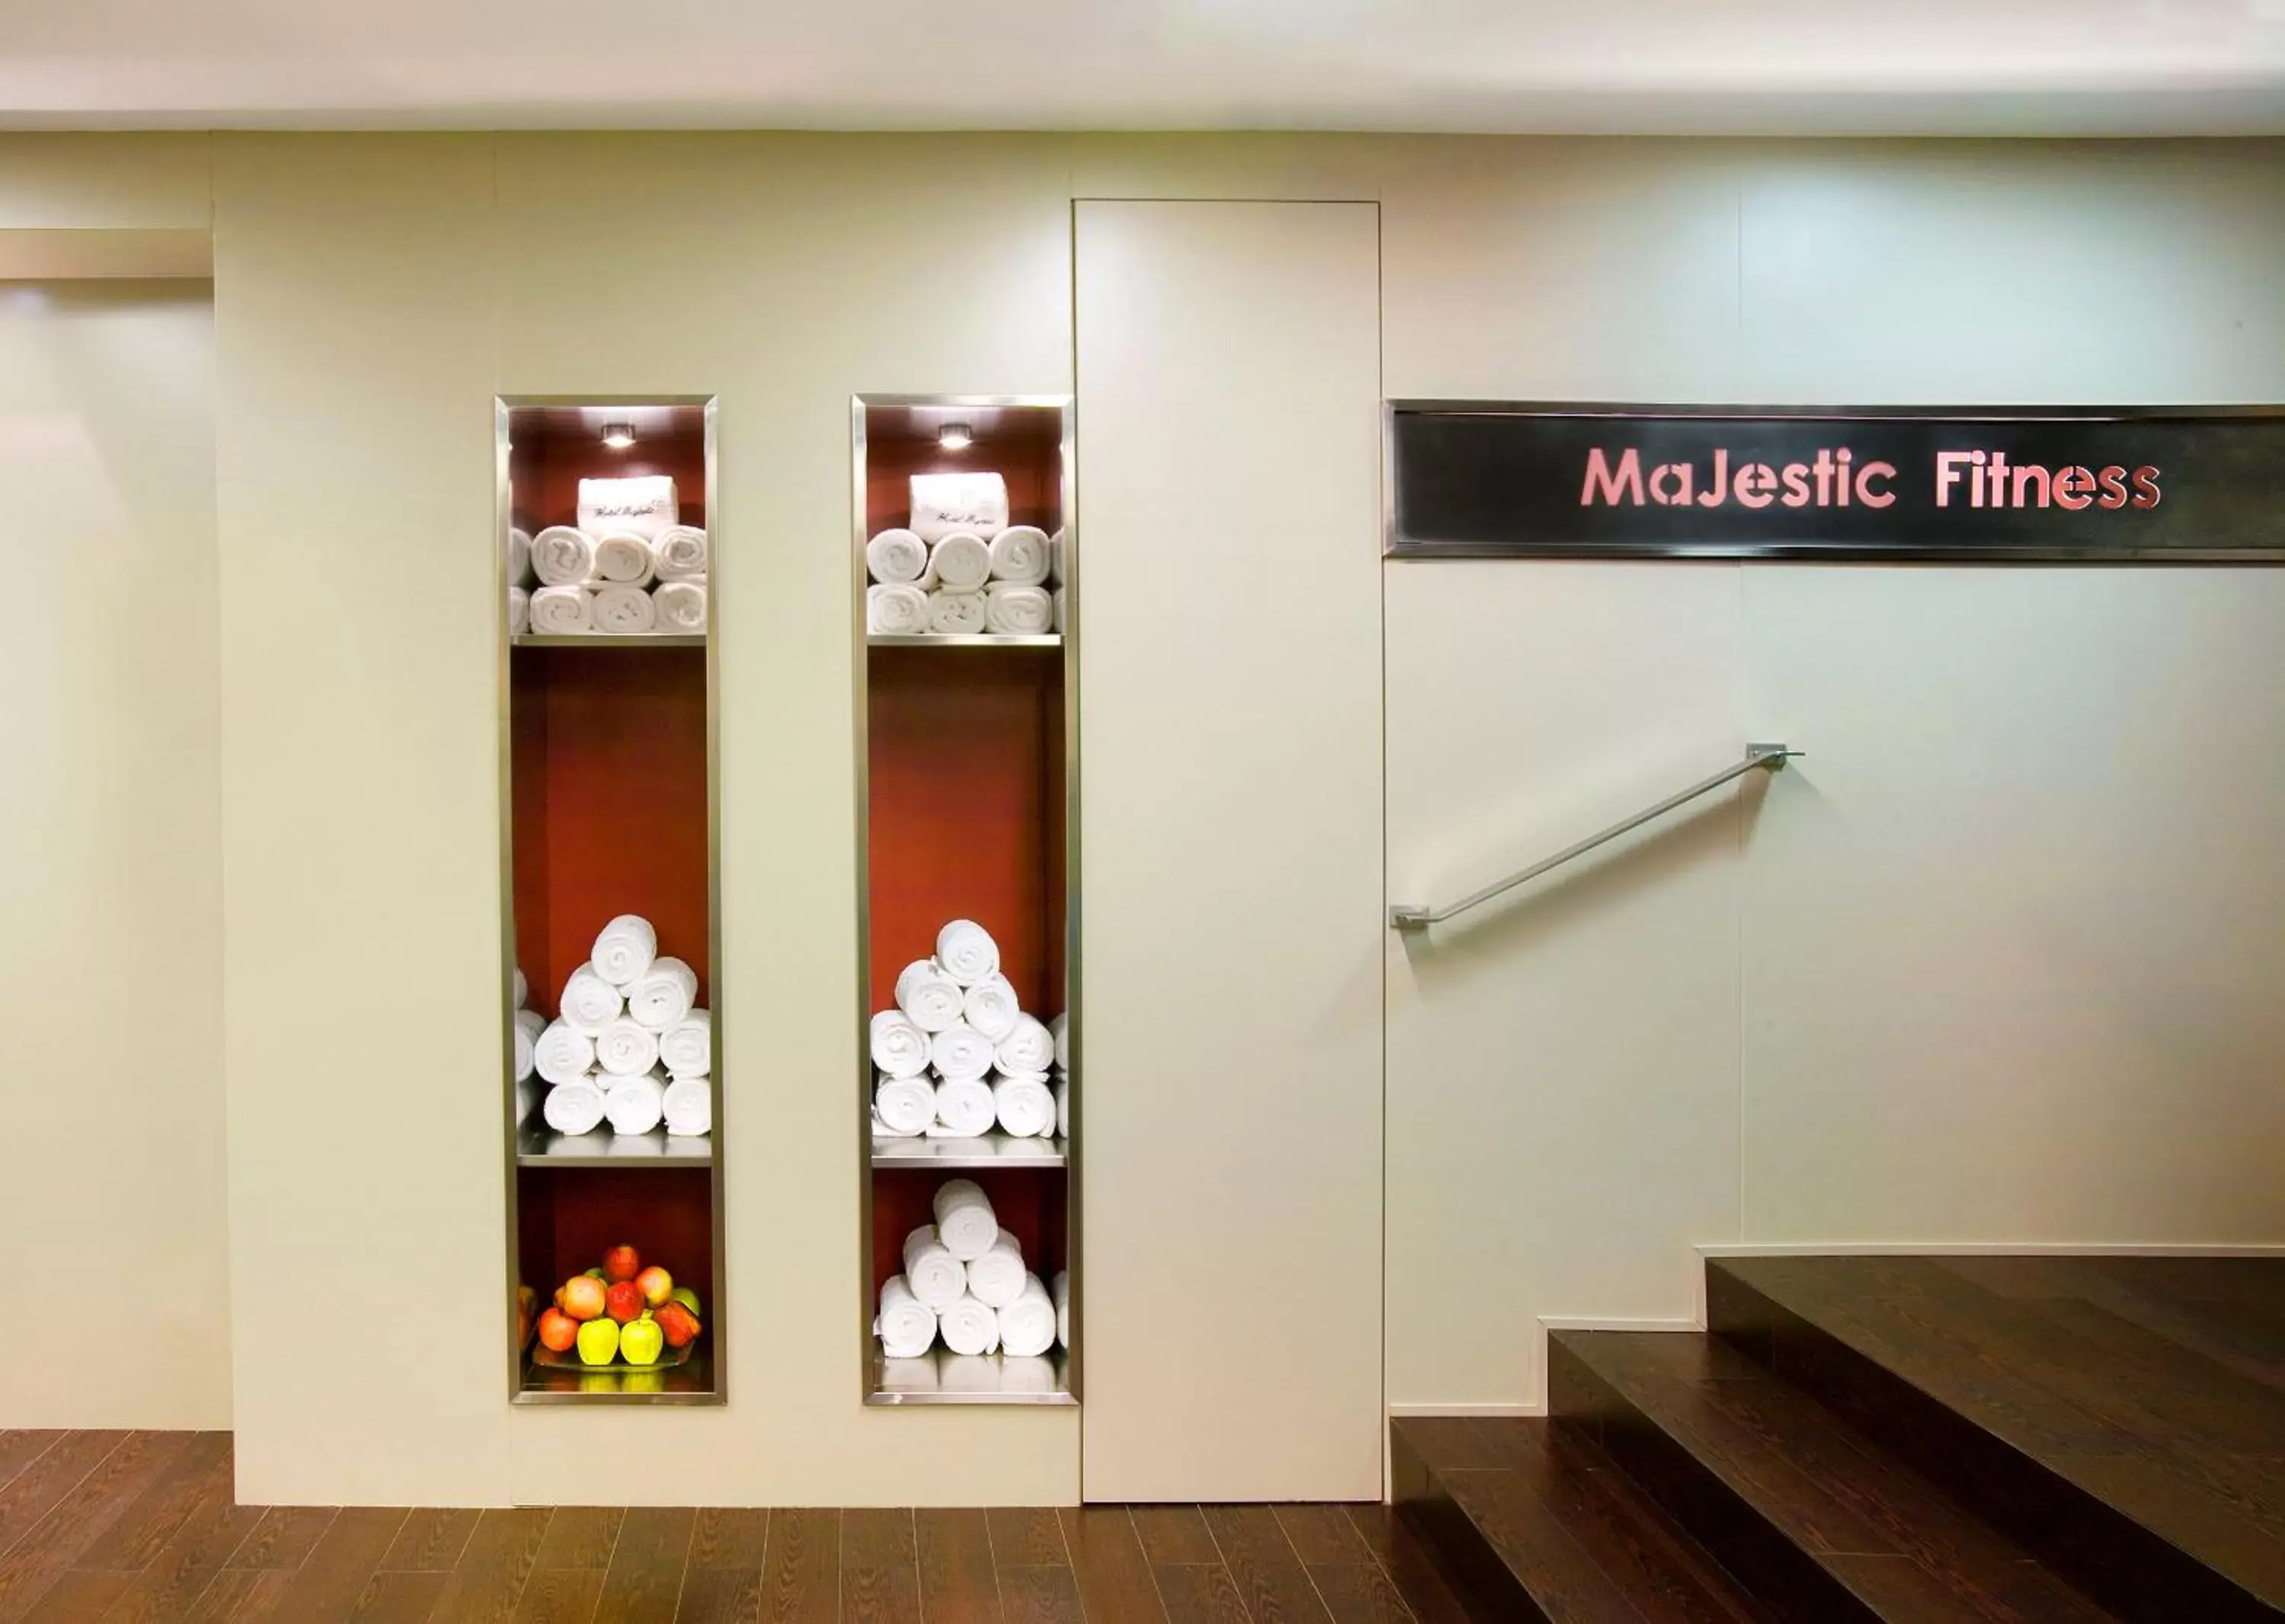 Fitness centre/facilities in Majestic Hotel & Spa Barcelona GL